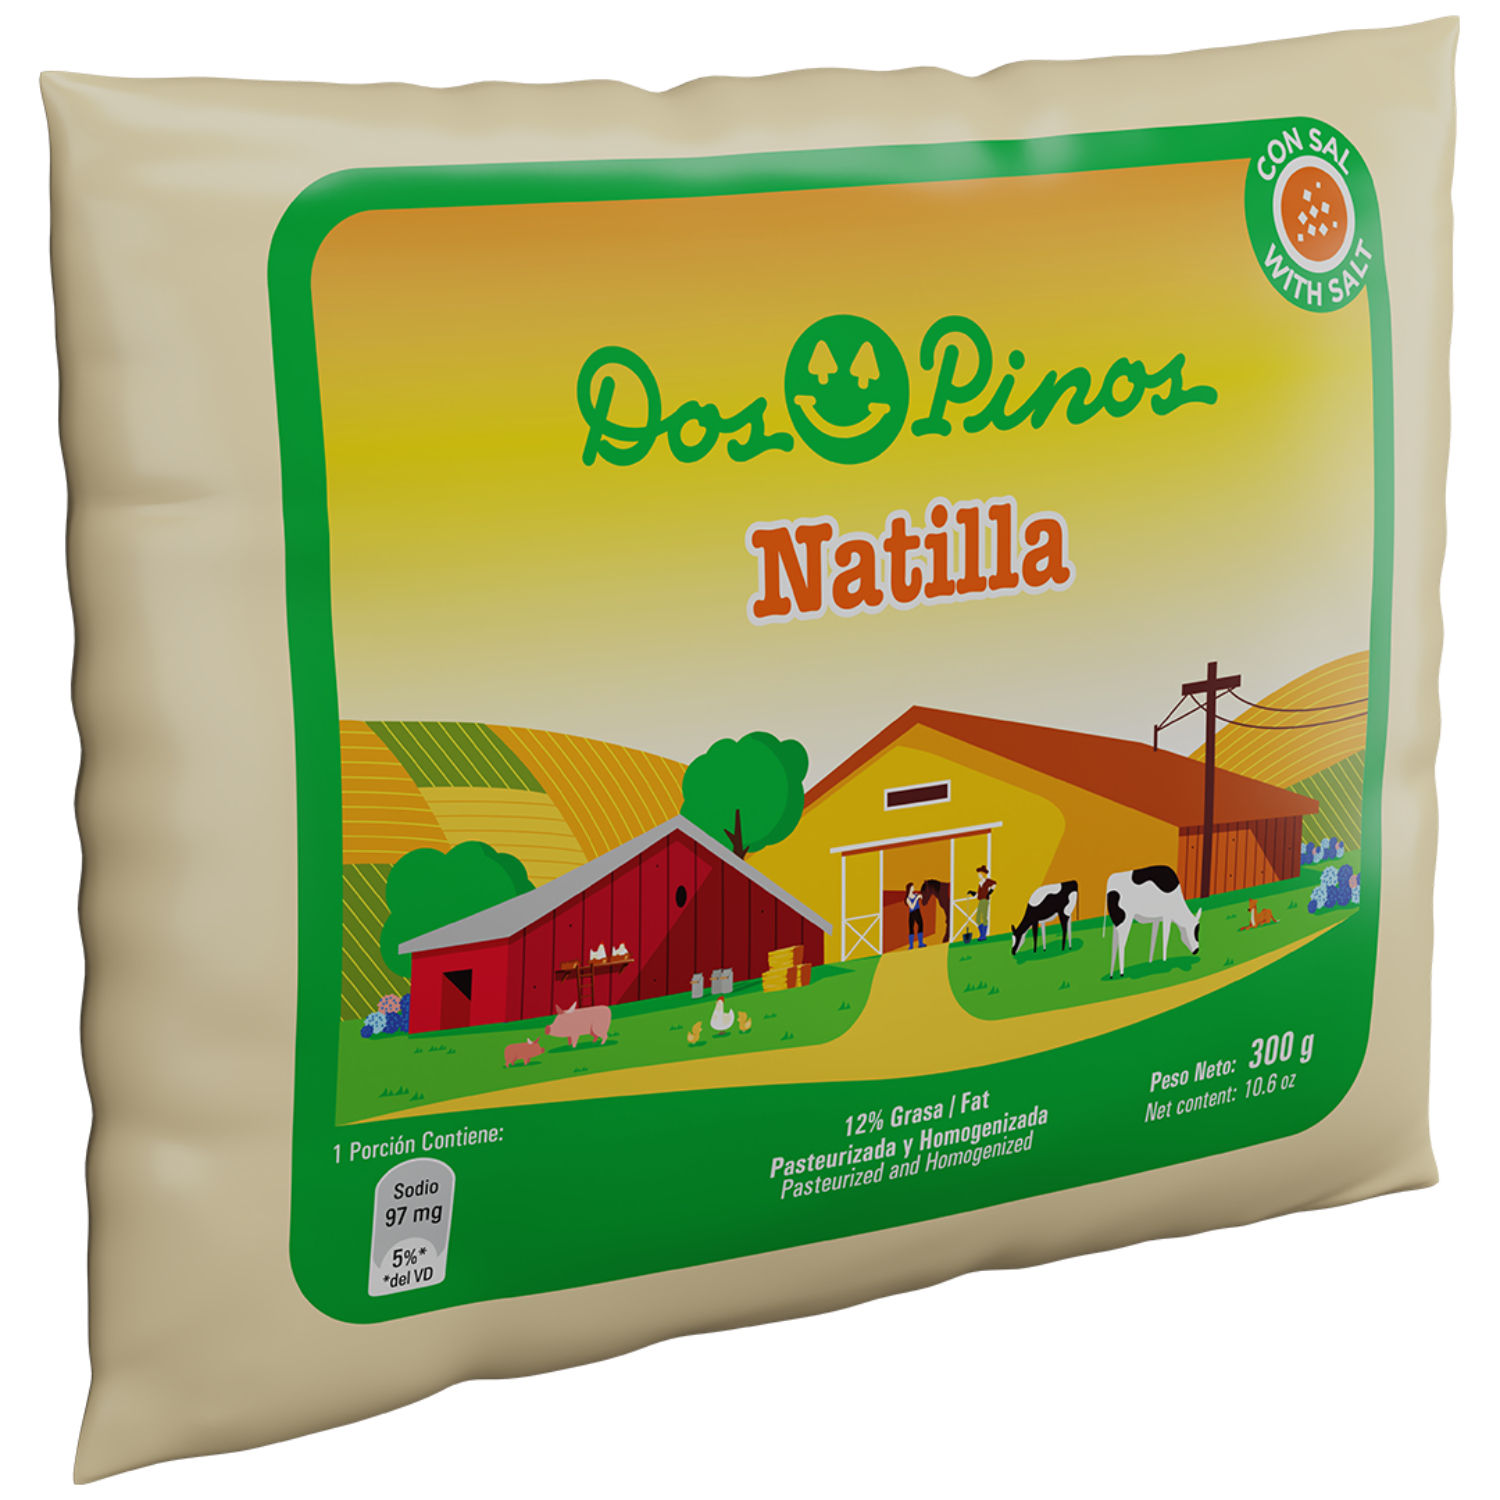 Natilla Con Sal Liviana Dos Pinos Paquete 300 G